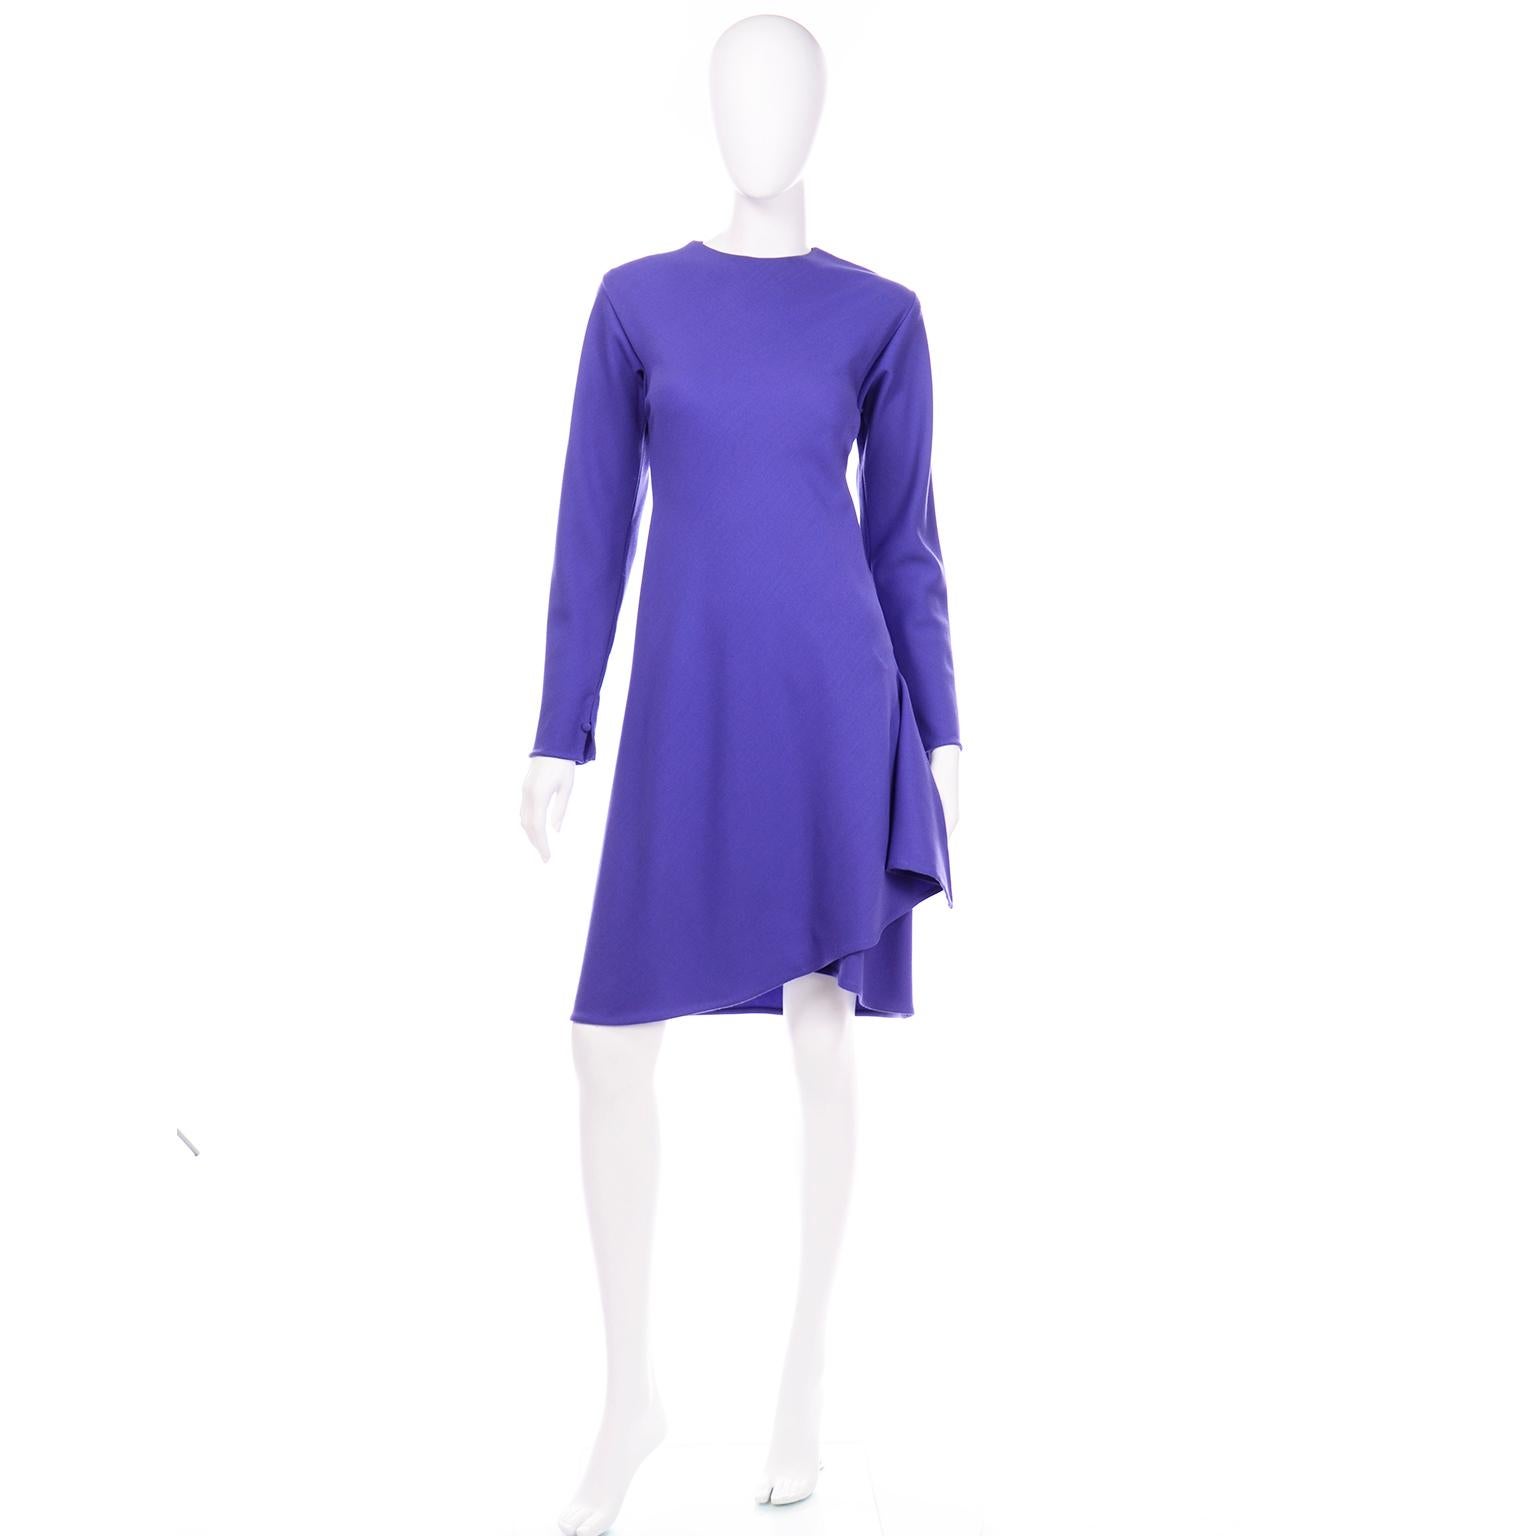 Cette merveilleuse robe vintage en jersey Halston est dans une belle nuance de laine légère violette. À première vue, la robe semble trompeusement simple, mais lorsqu'on l'enfile, on se rend compte instantanément des touches uniques de Halston qui